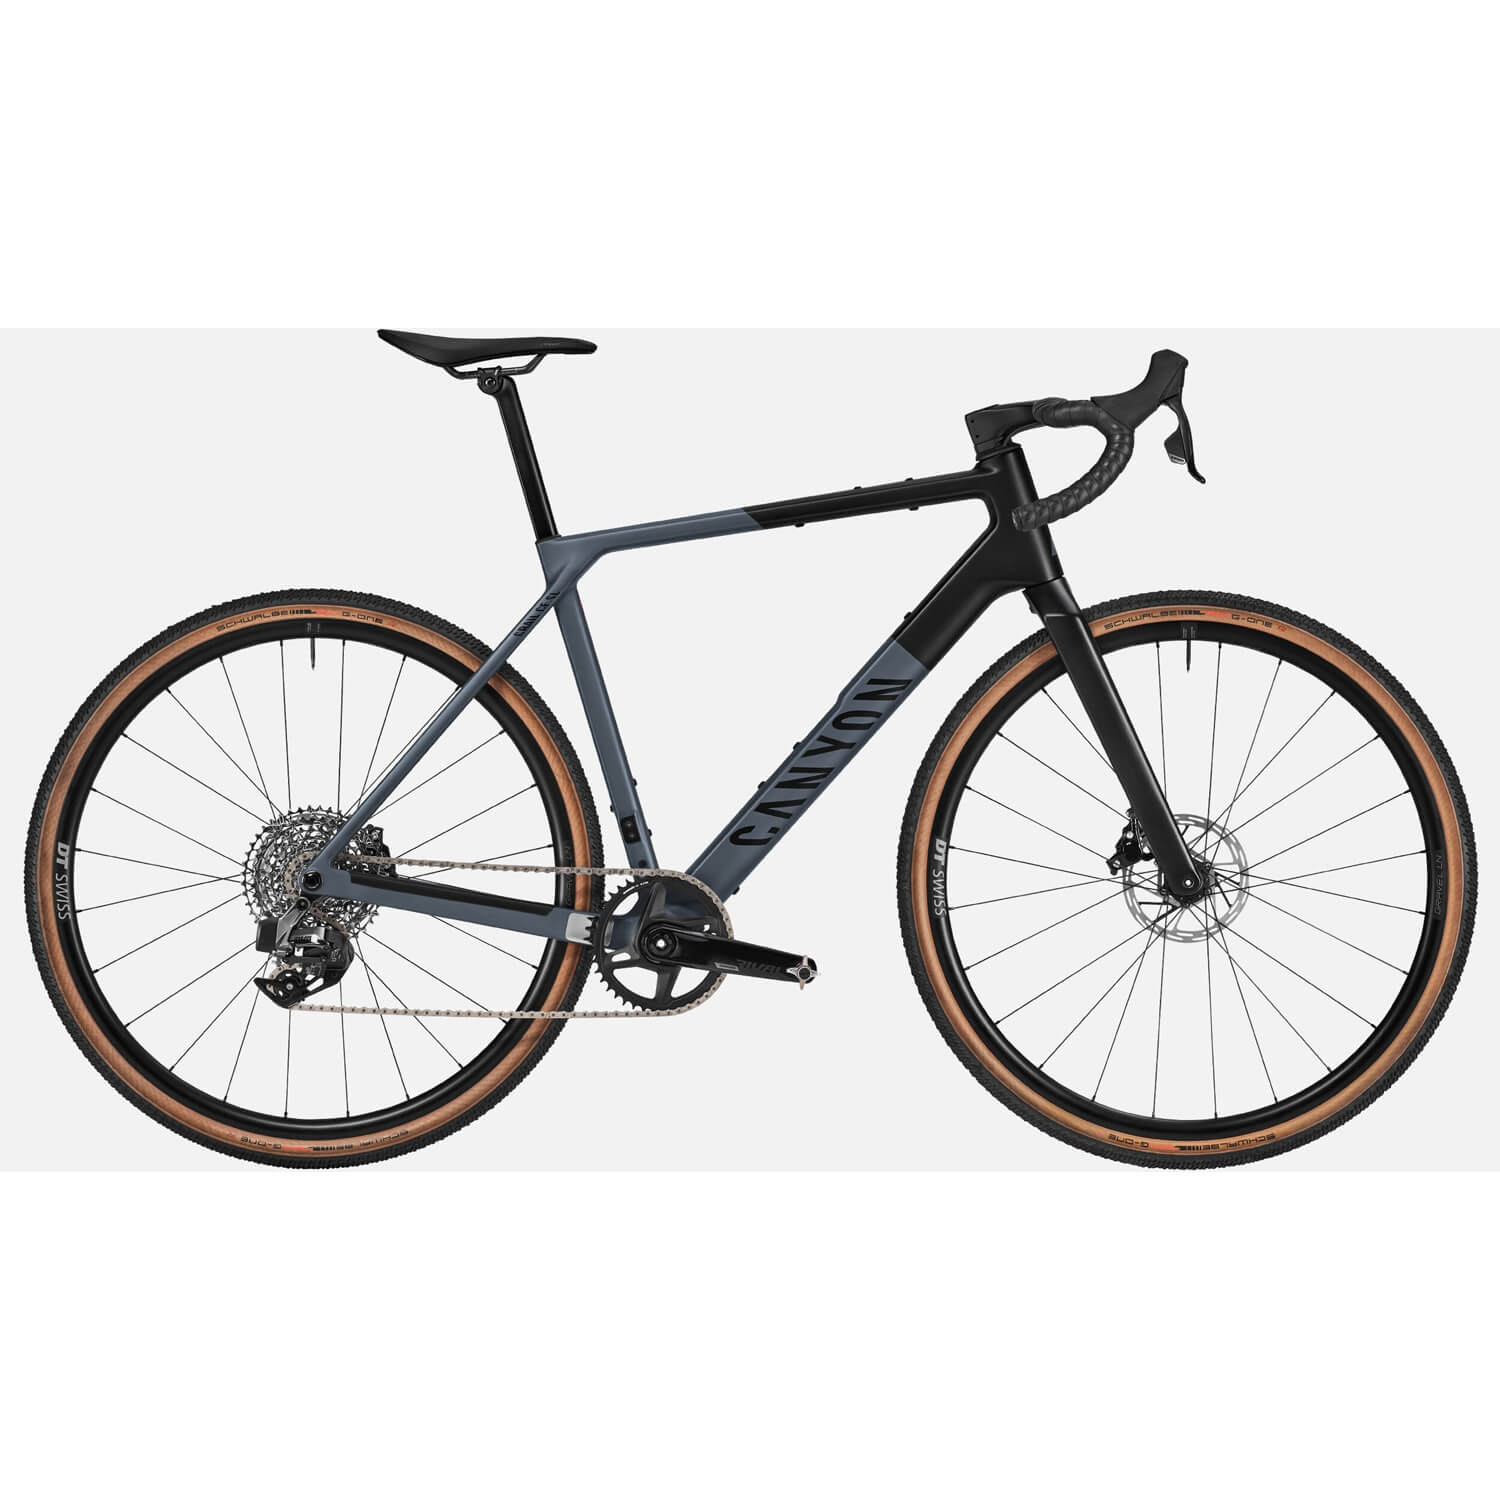 Гравийный велосипед Canyon Grail CF SL 7 AXS, темно-серый